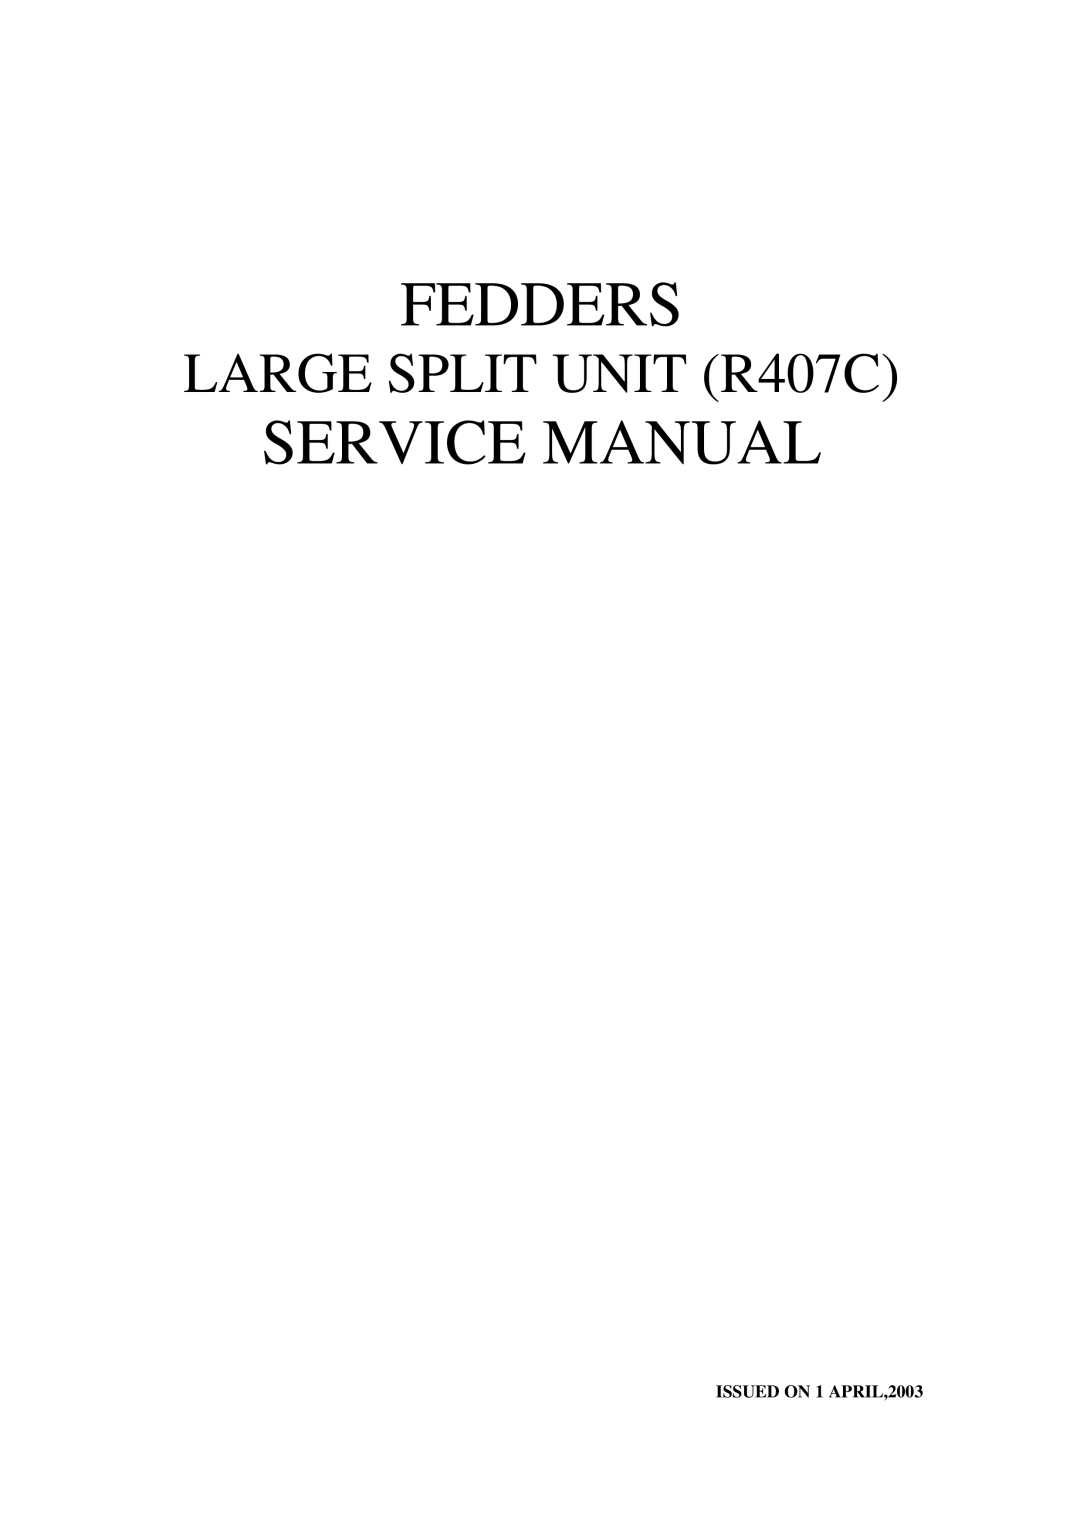 Fedders R407C service manual Fedders 